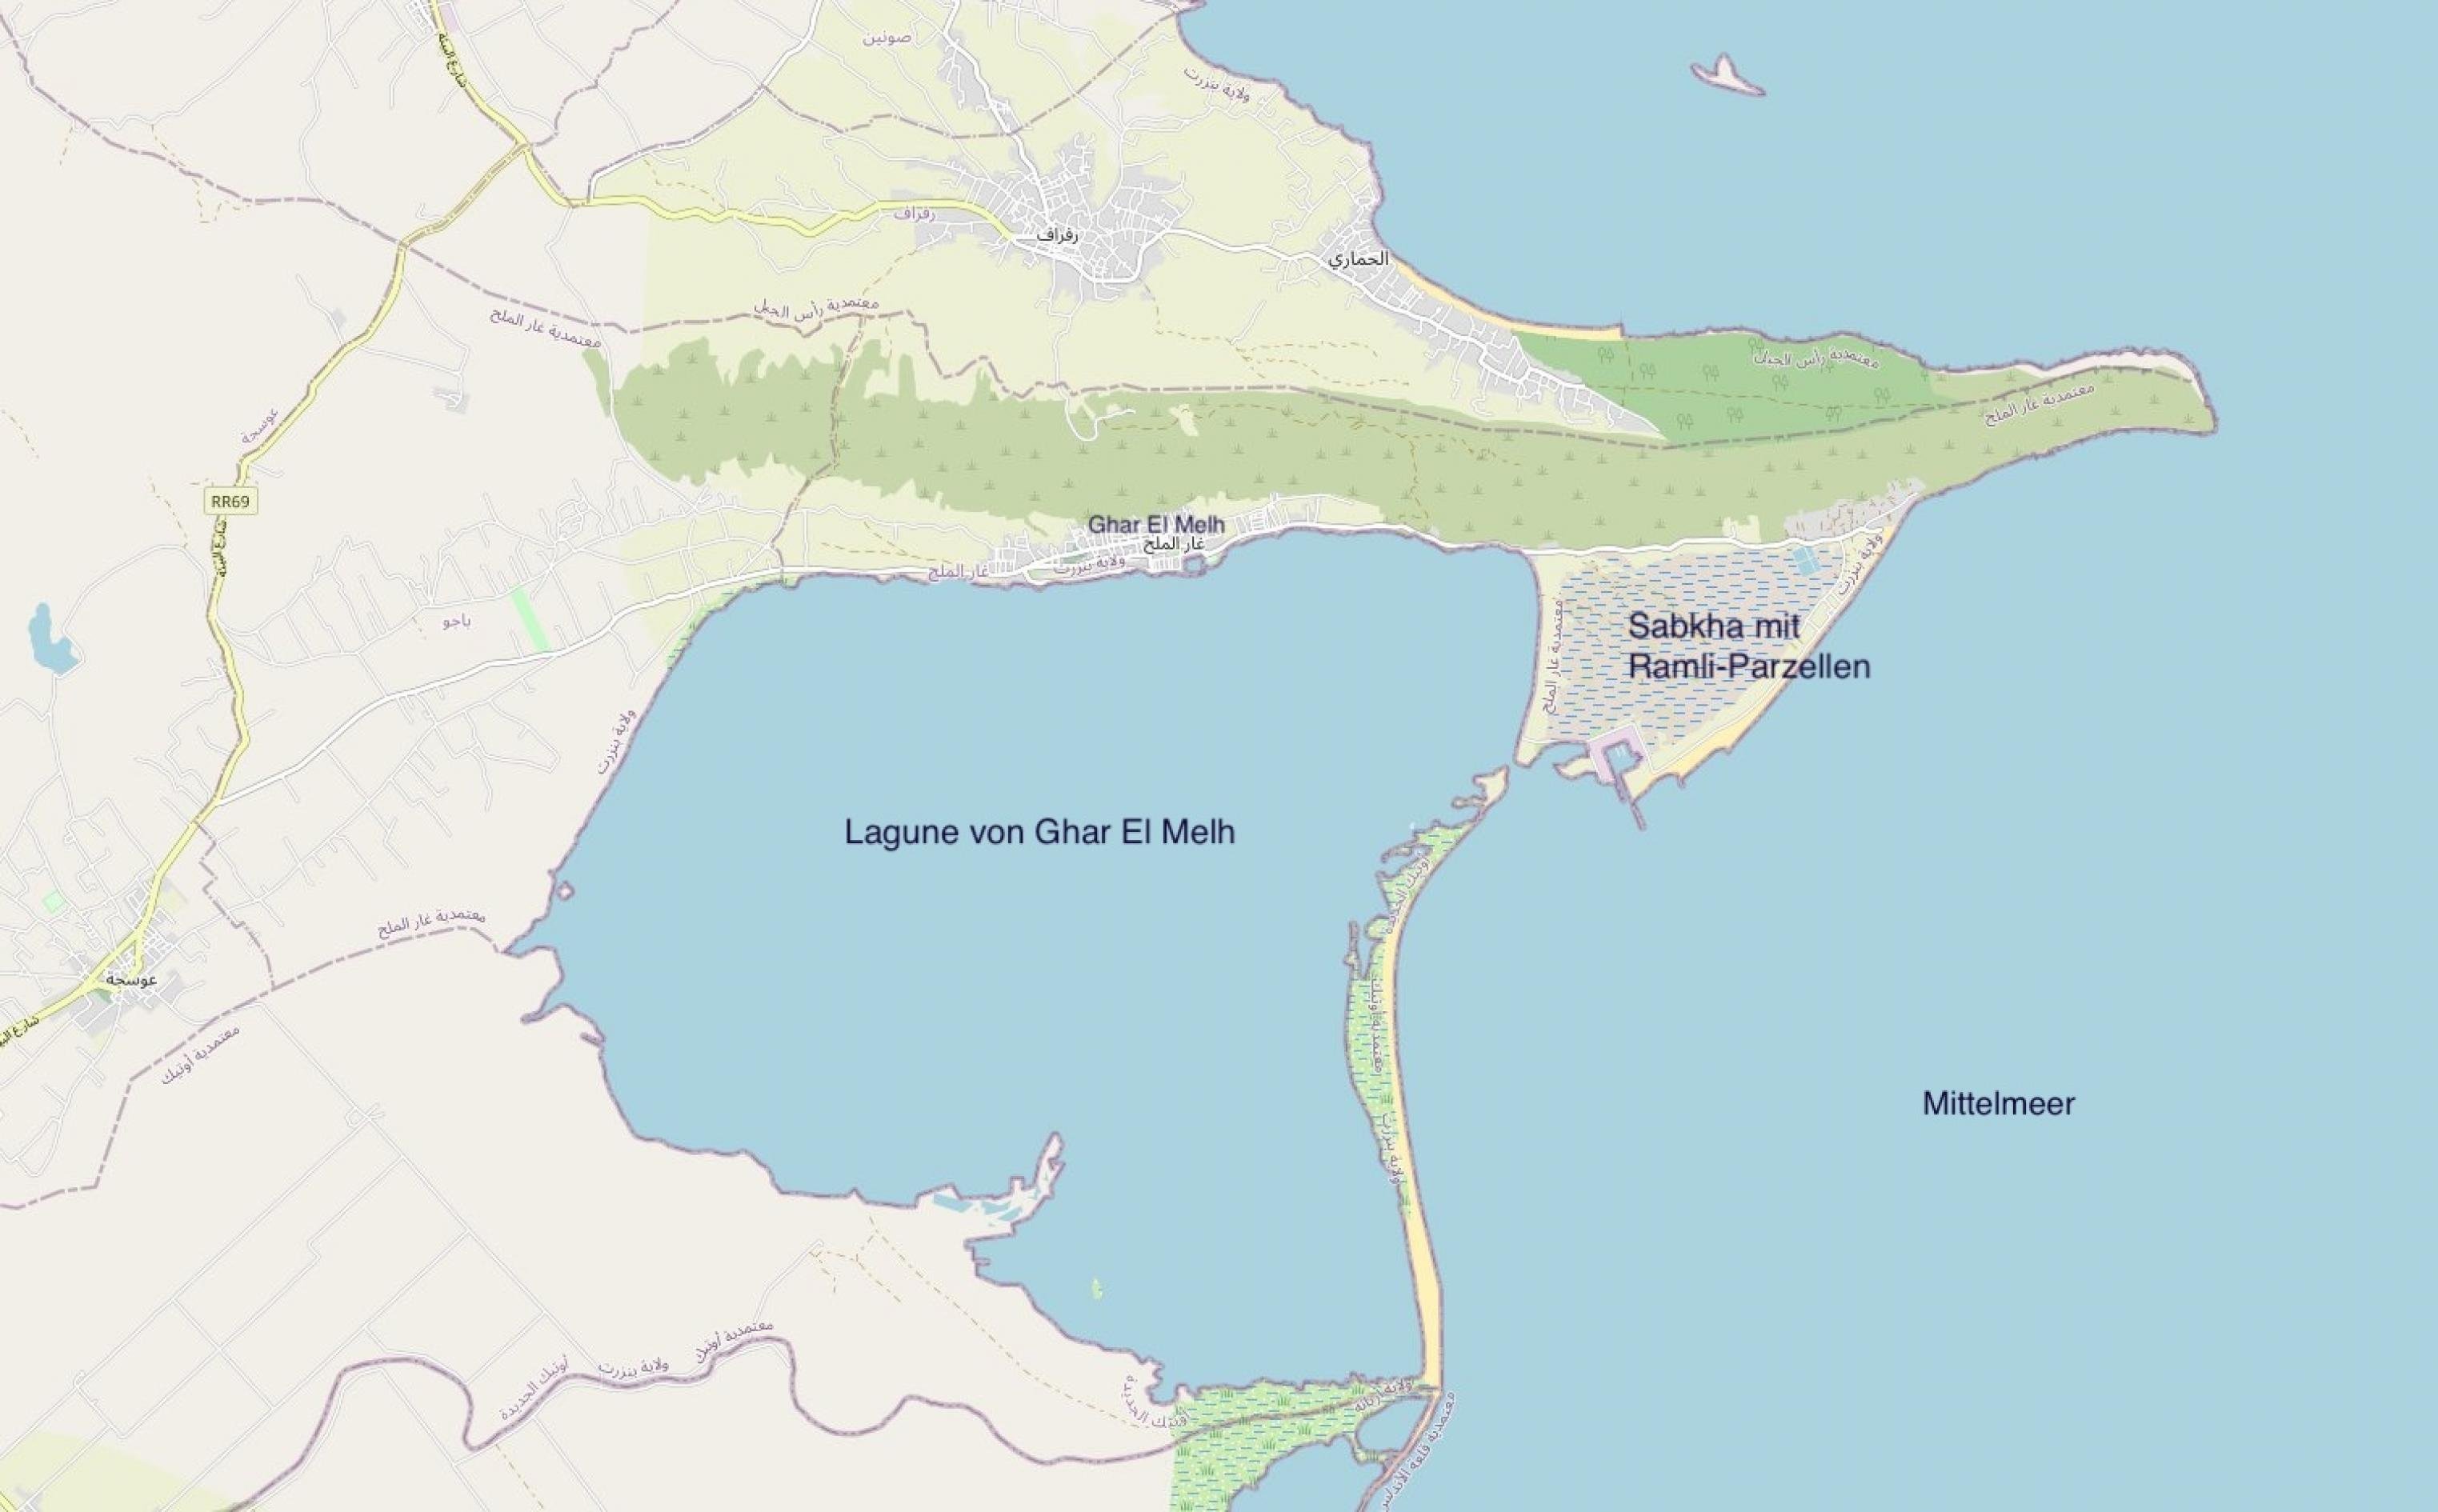 Karte der Lagune und der Sabkha von Ghar El Melh, Tunesien